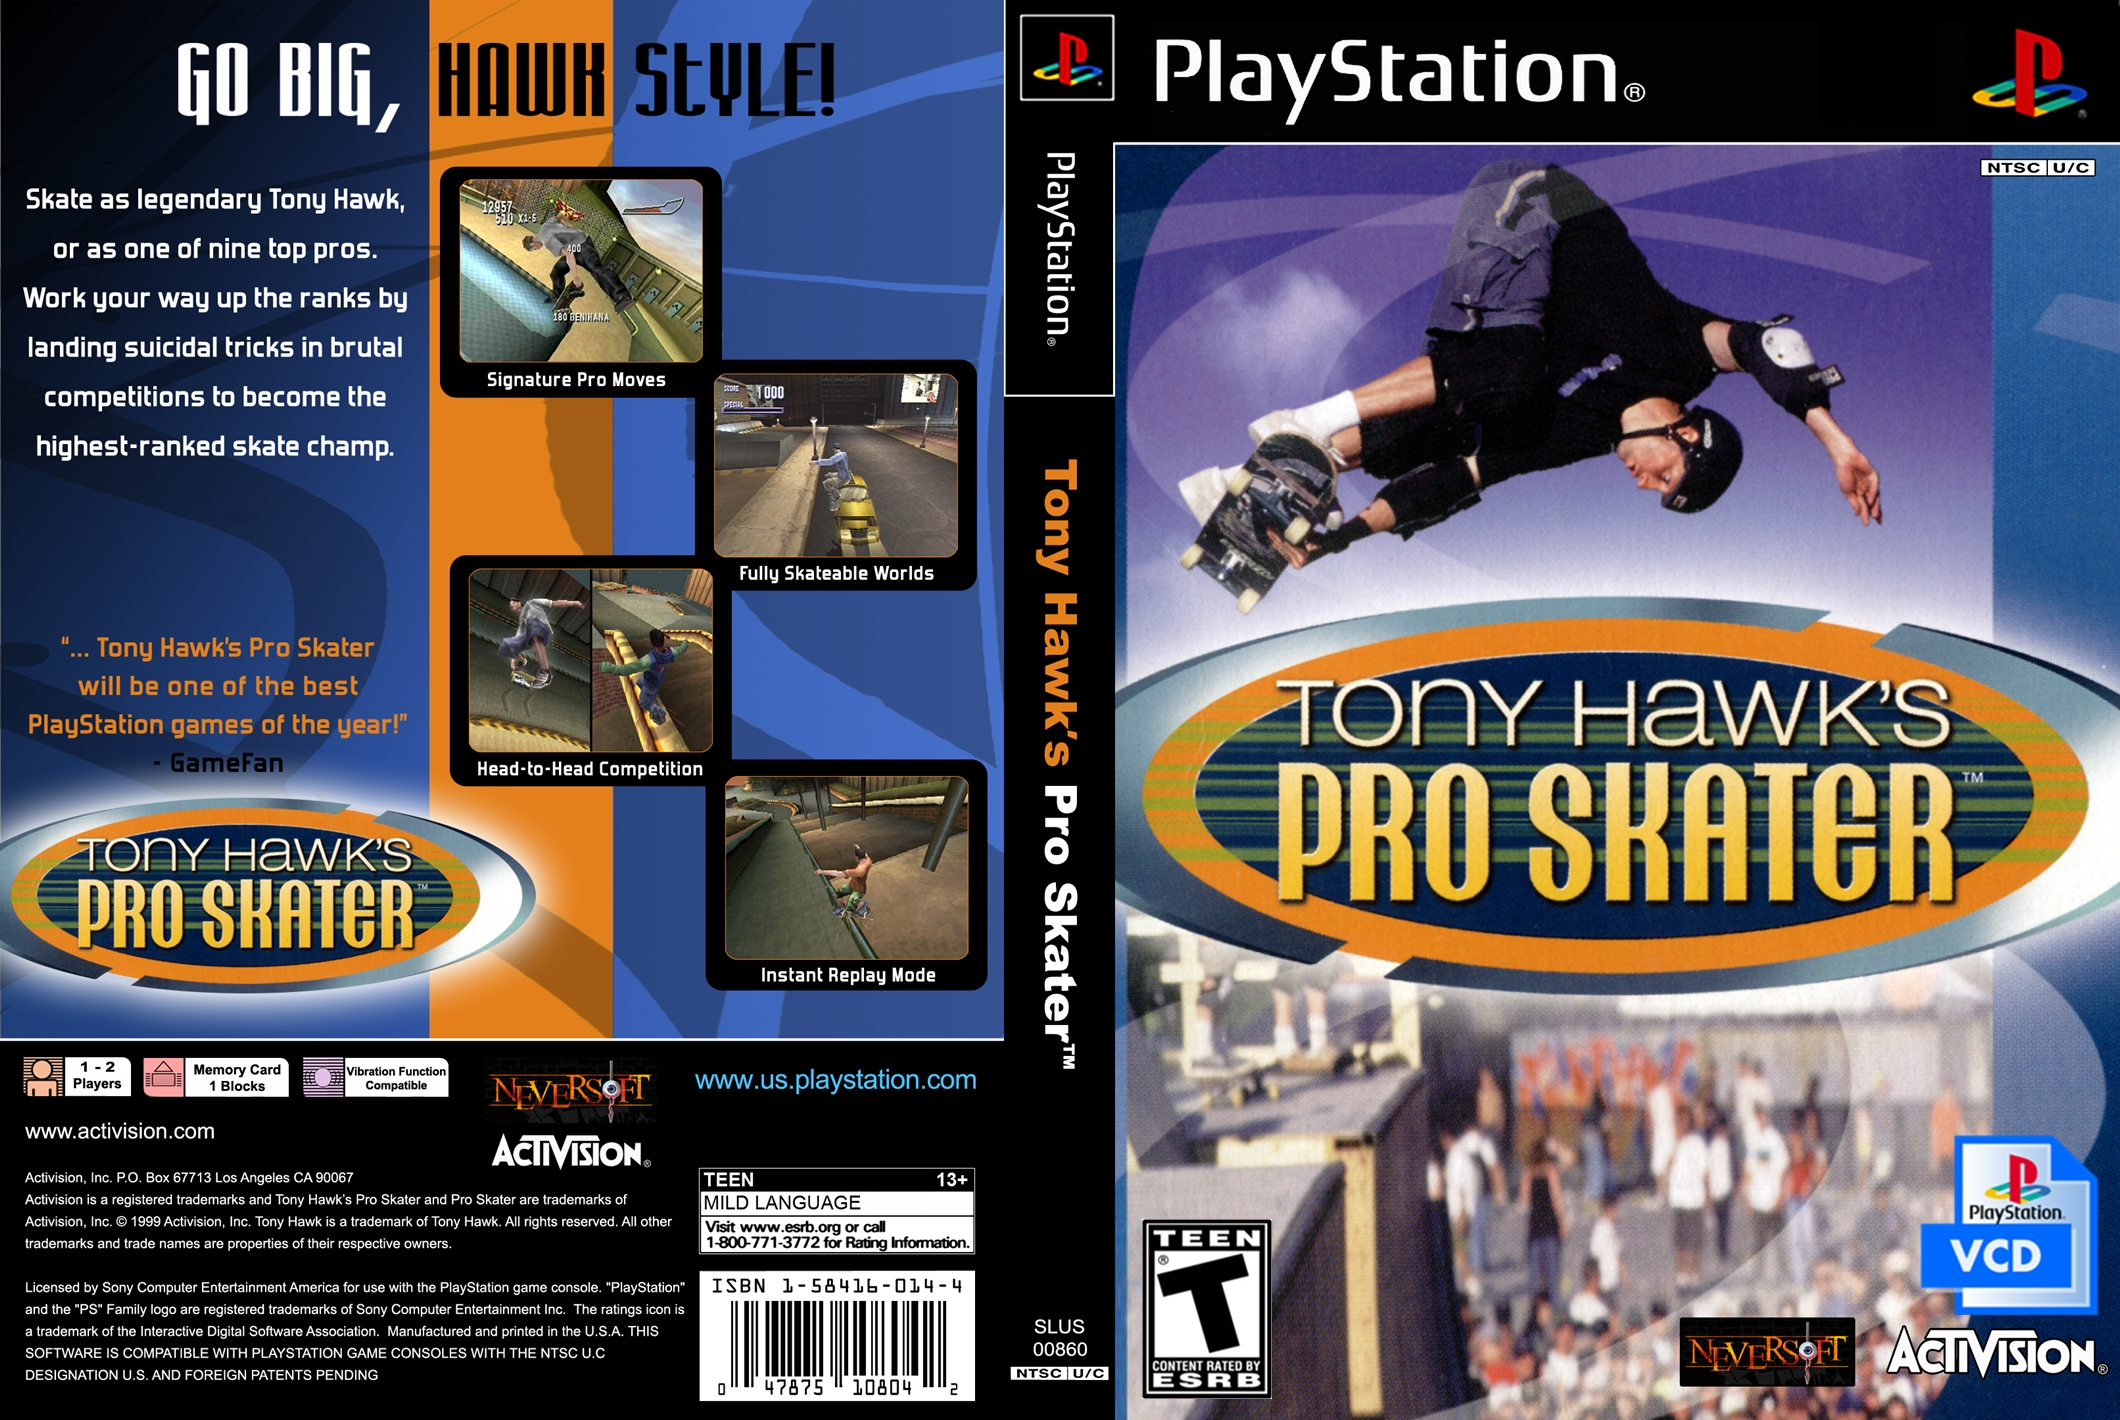 Meu PS2 Nostalgia: Tony Hawk's Pro Skater 3 VCD PS1 POPS Opl PS2